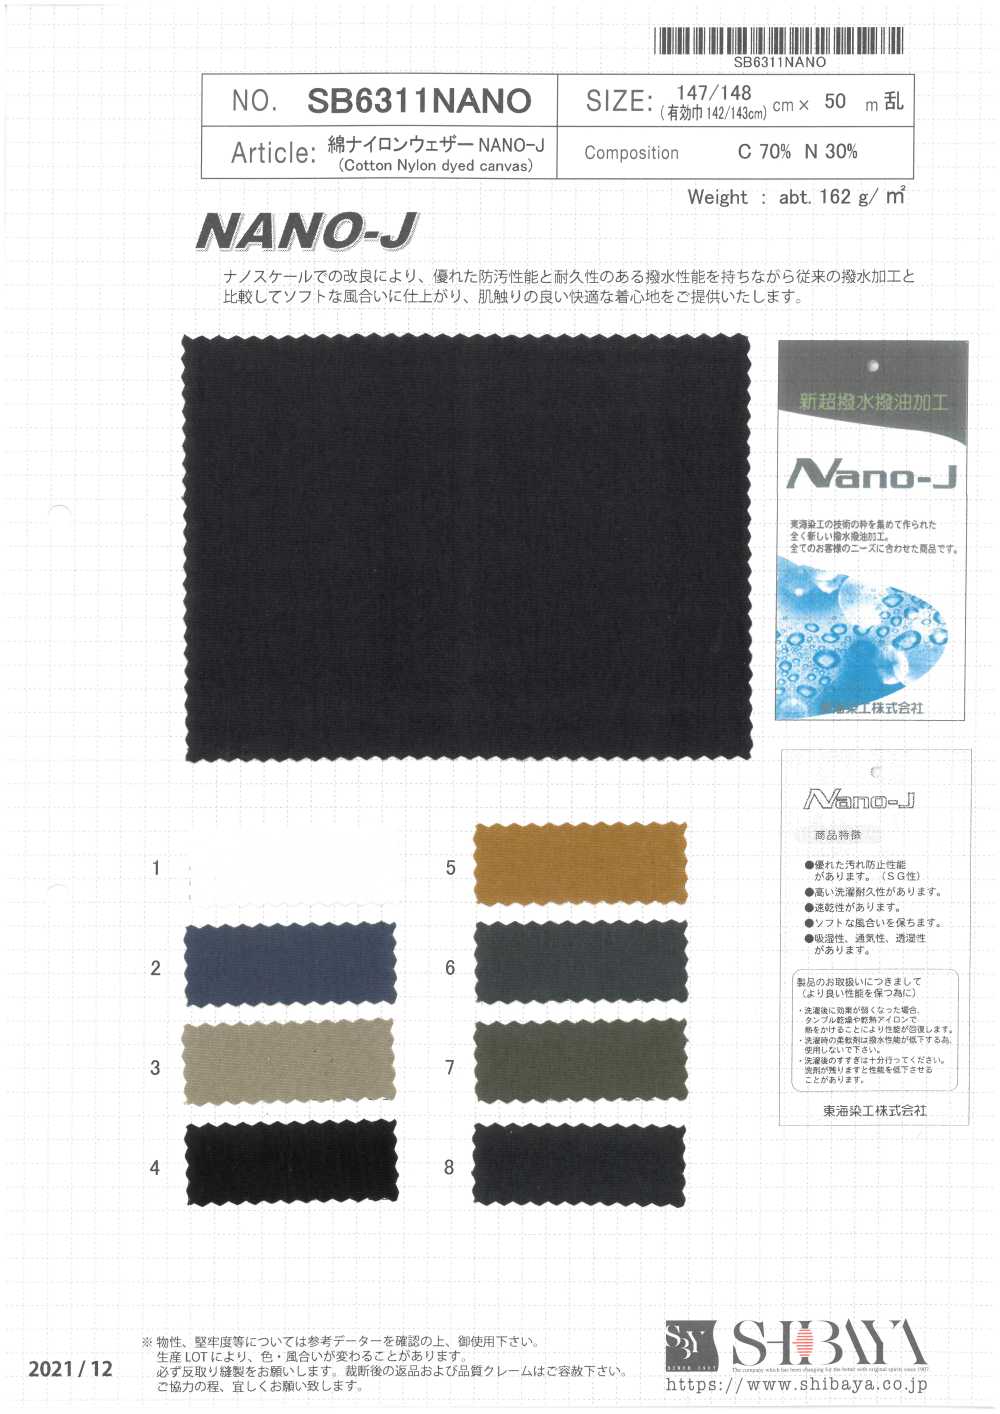 SB6311NANO Chiffon En Coton Et Nylon NANO-J[Fabrication De Textile] SHIBAYA